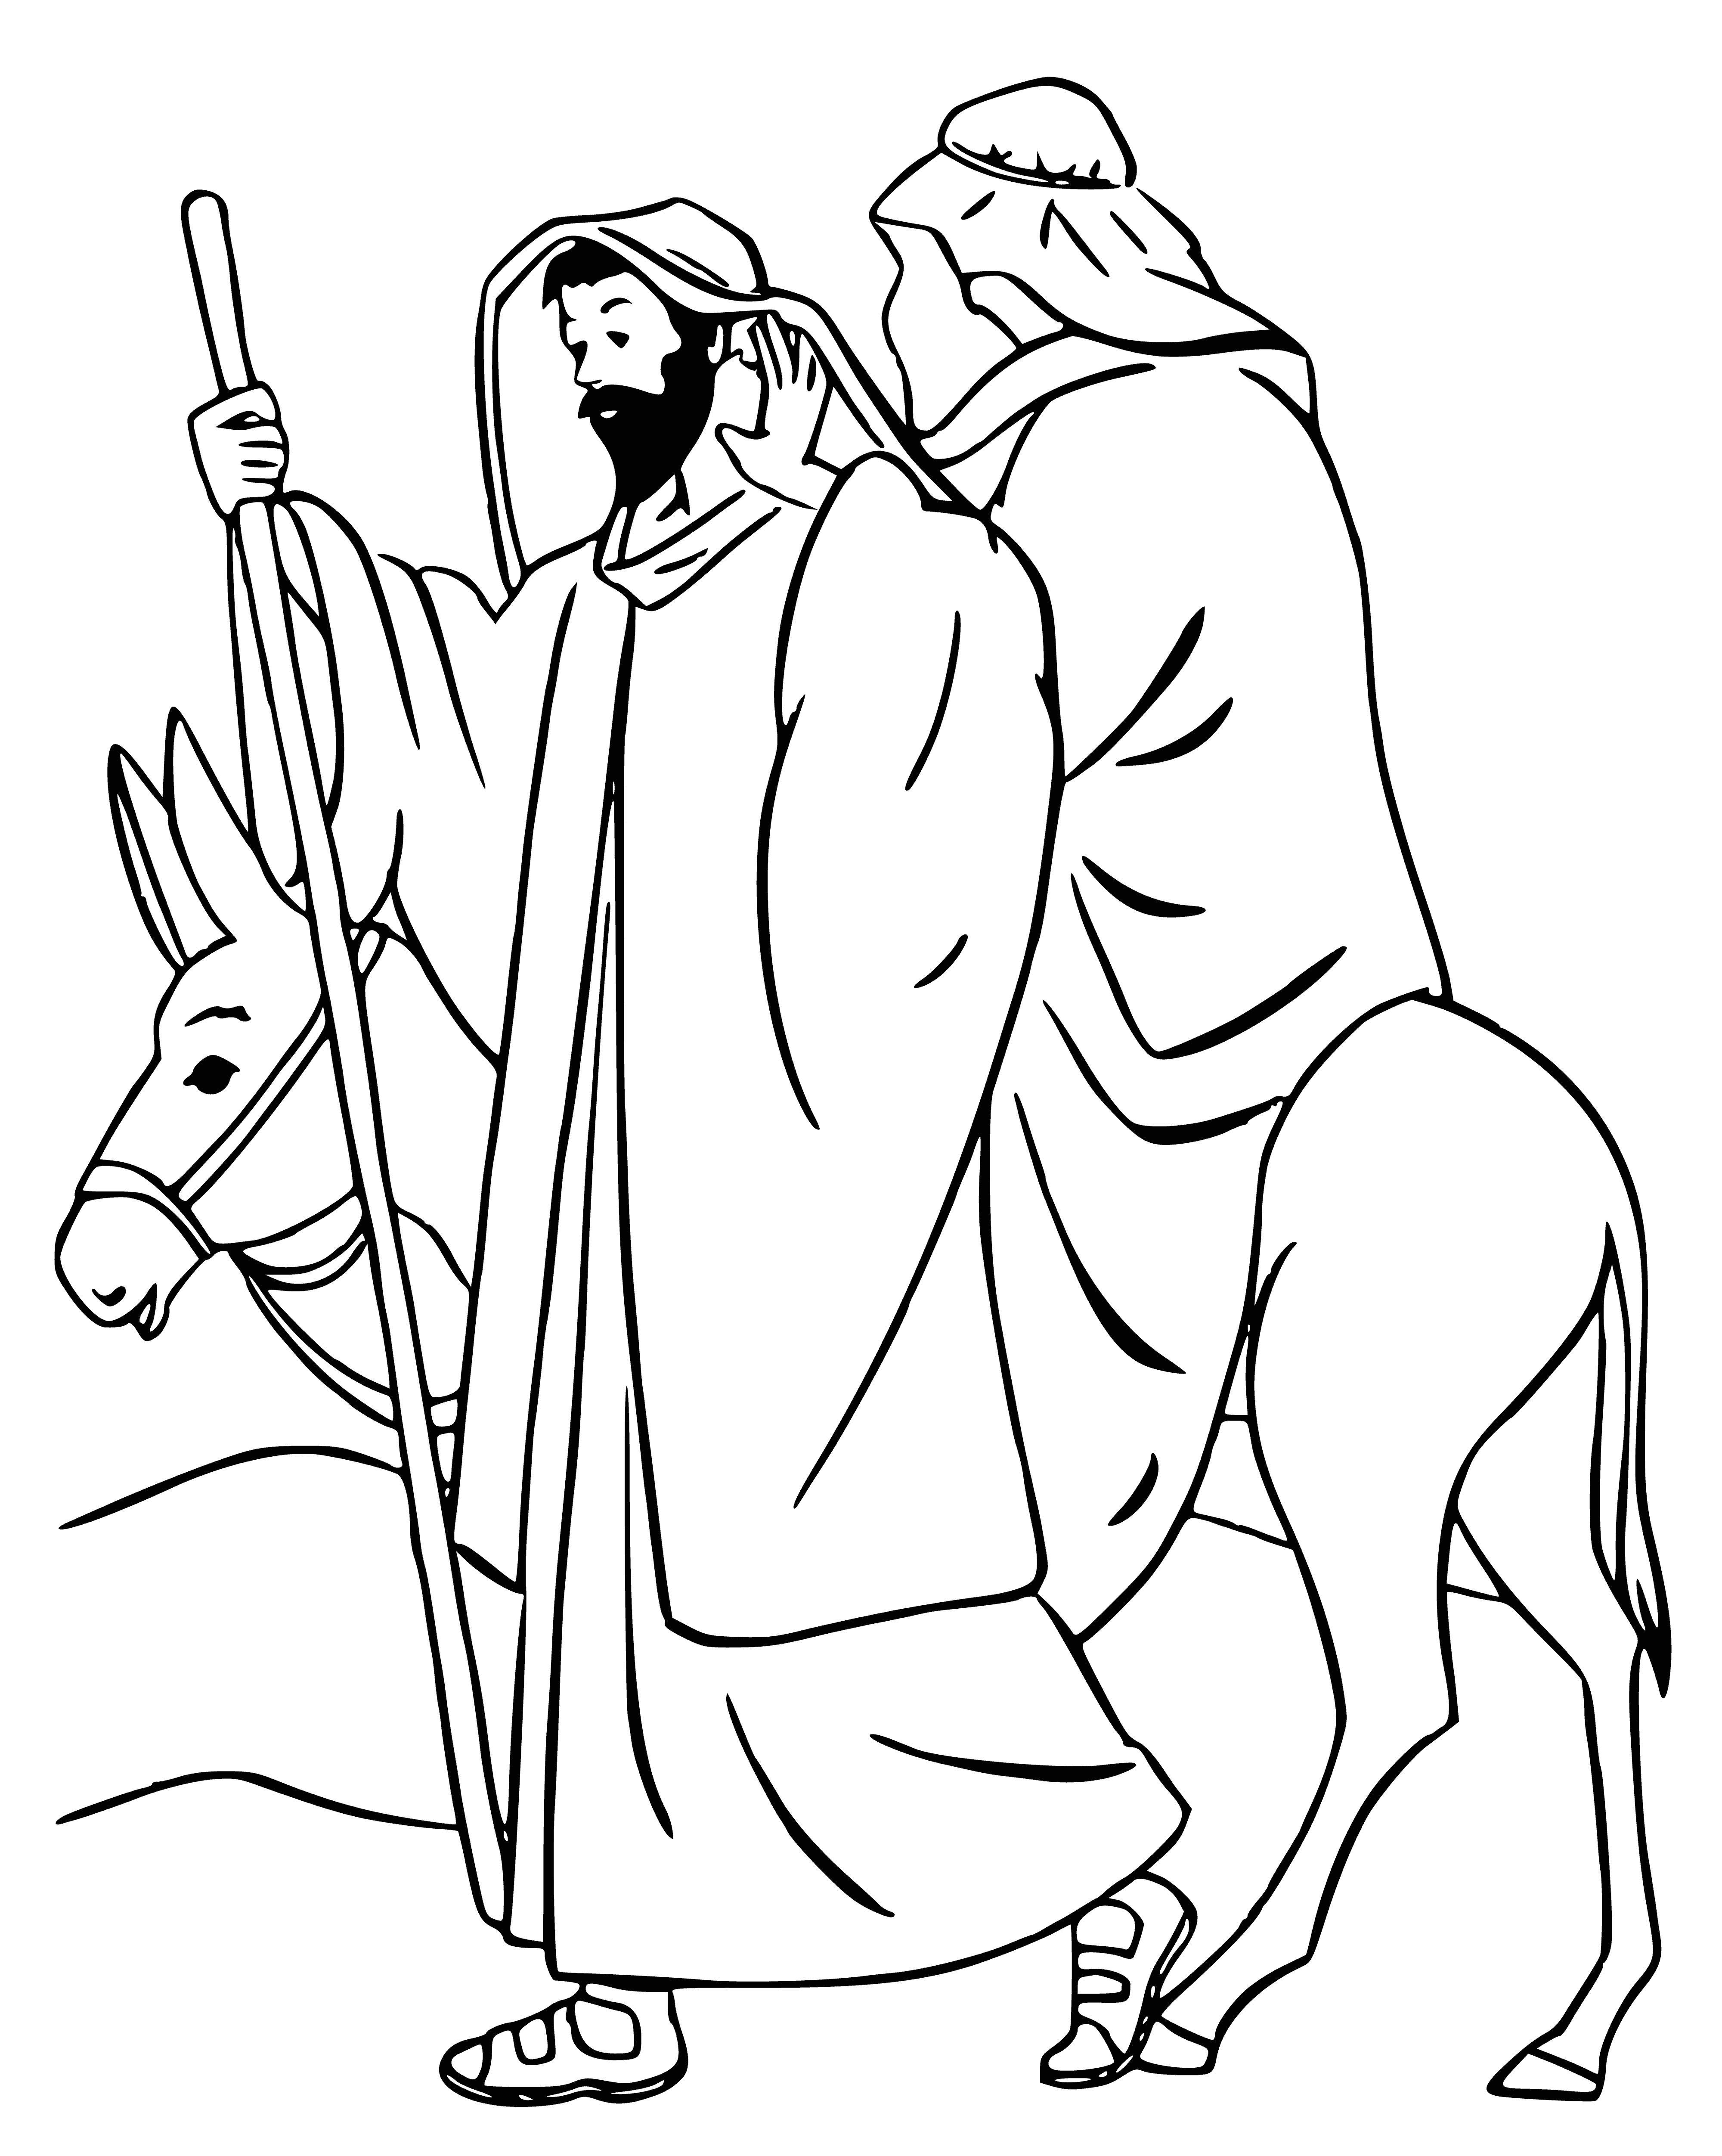 De herders gaan Jezus aanbidden kleurplaat